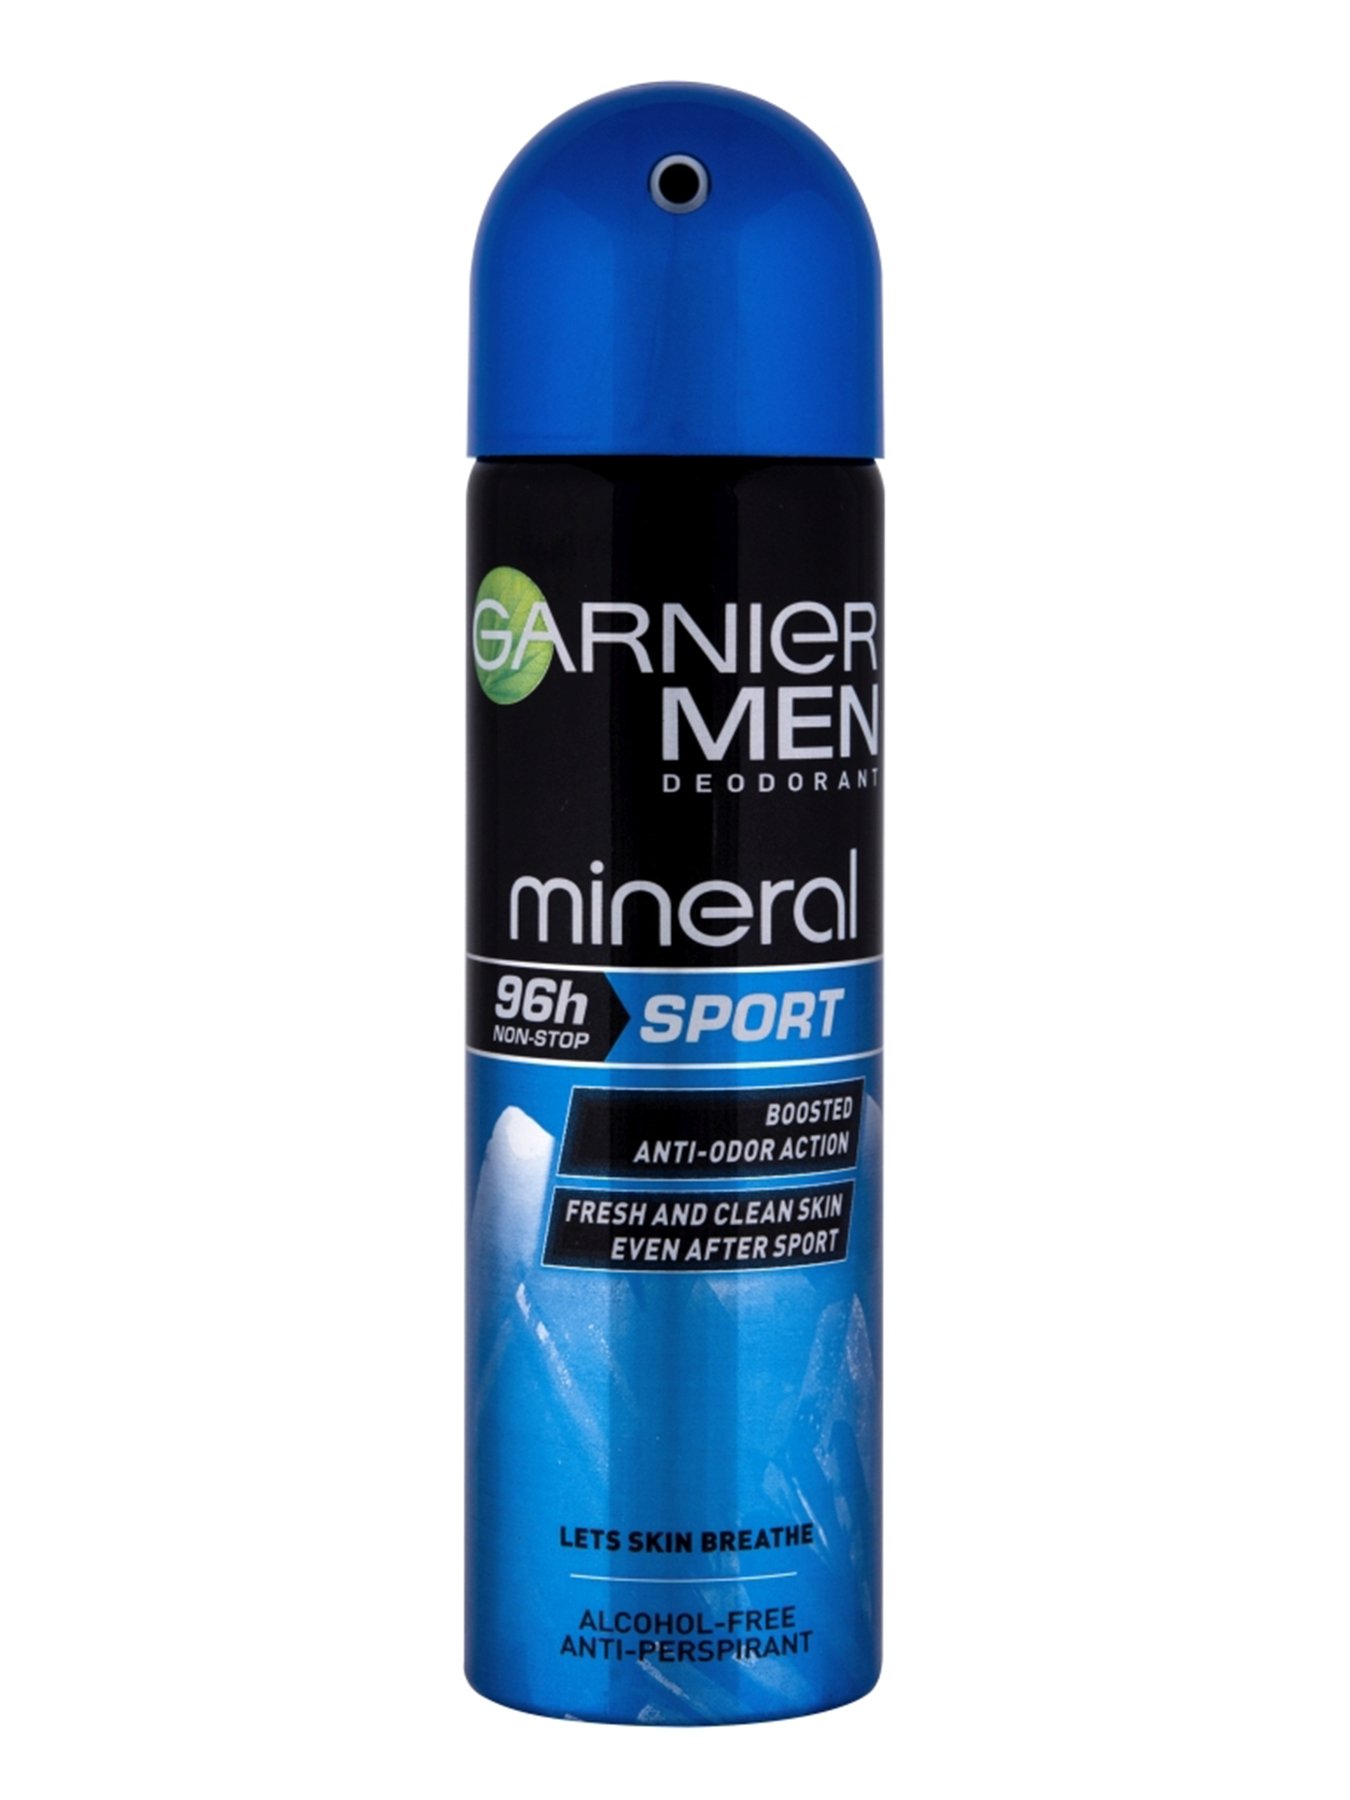 Garnier Mineral Deo Men Anti-perspirant 96H Sport Sprej